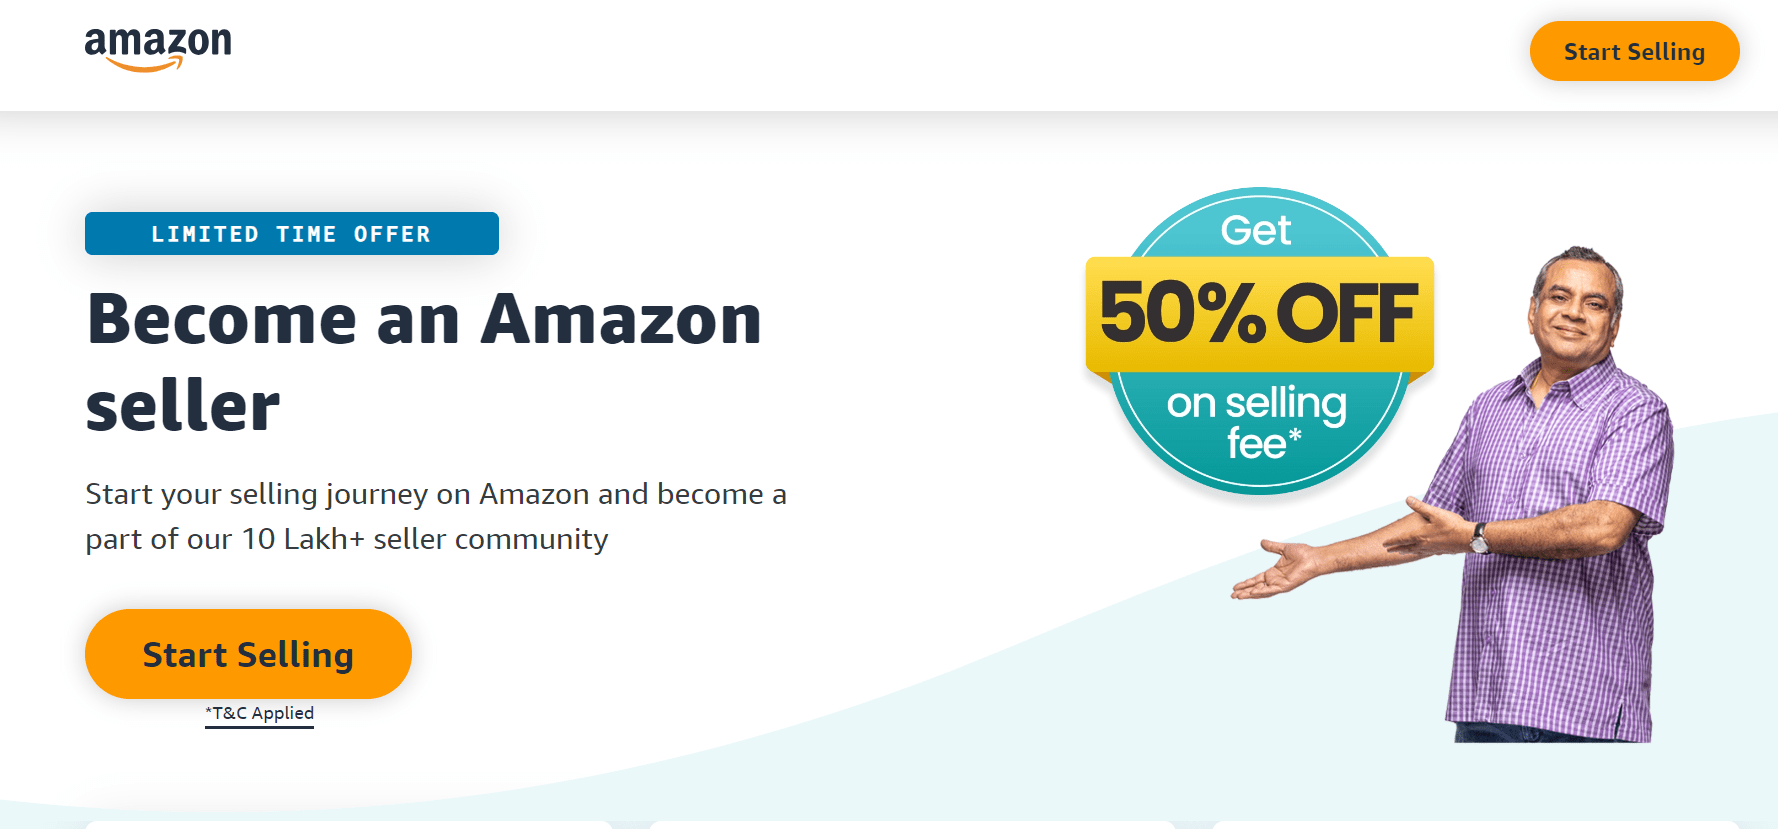 Amazon - money earning websites #3